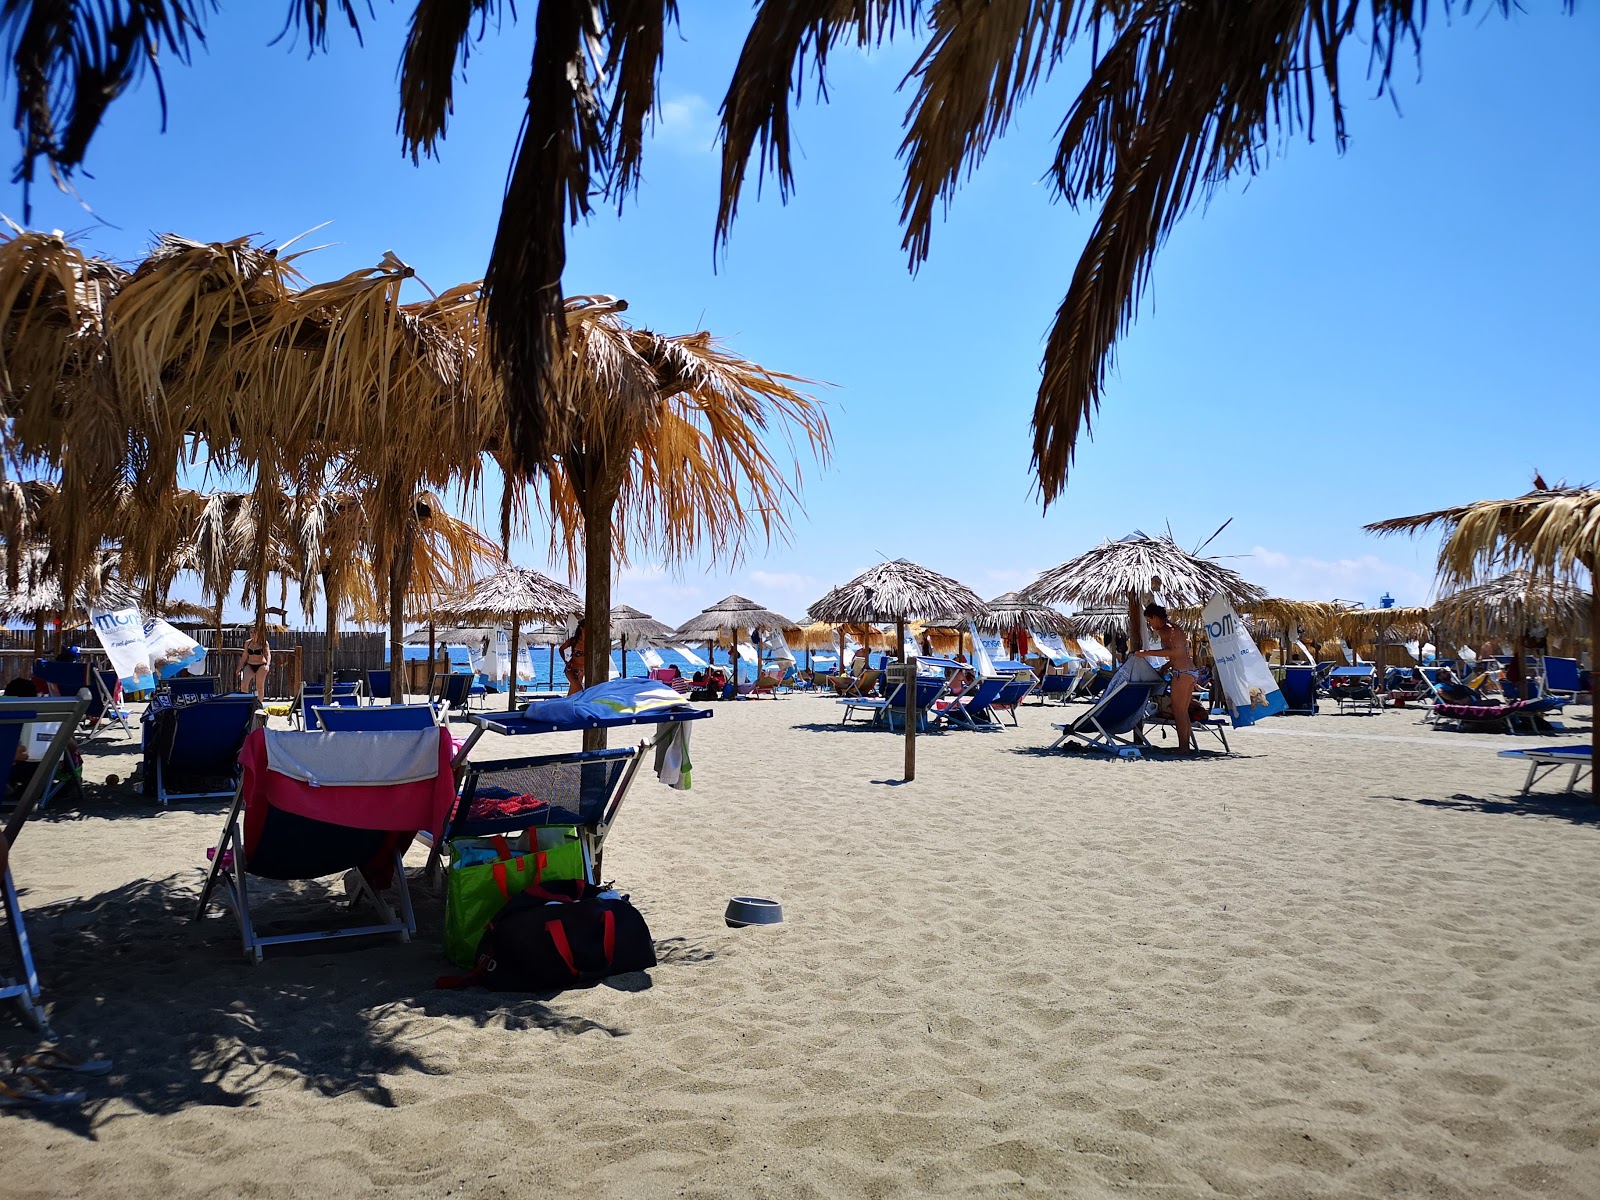 Foto af Soleluna beach - populært sted blandt afslapningskendere